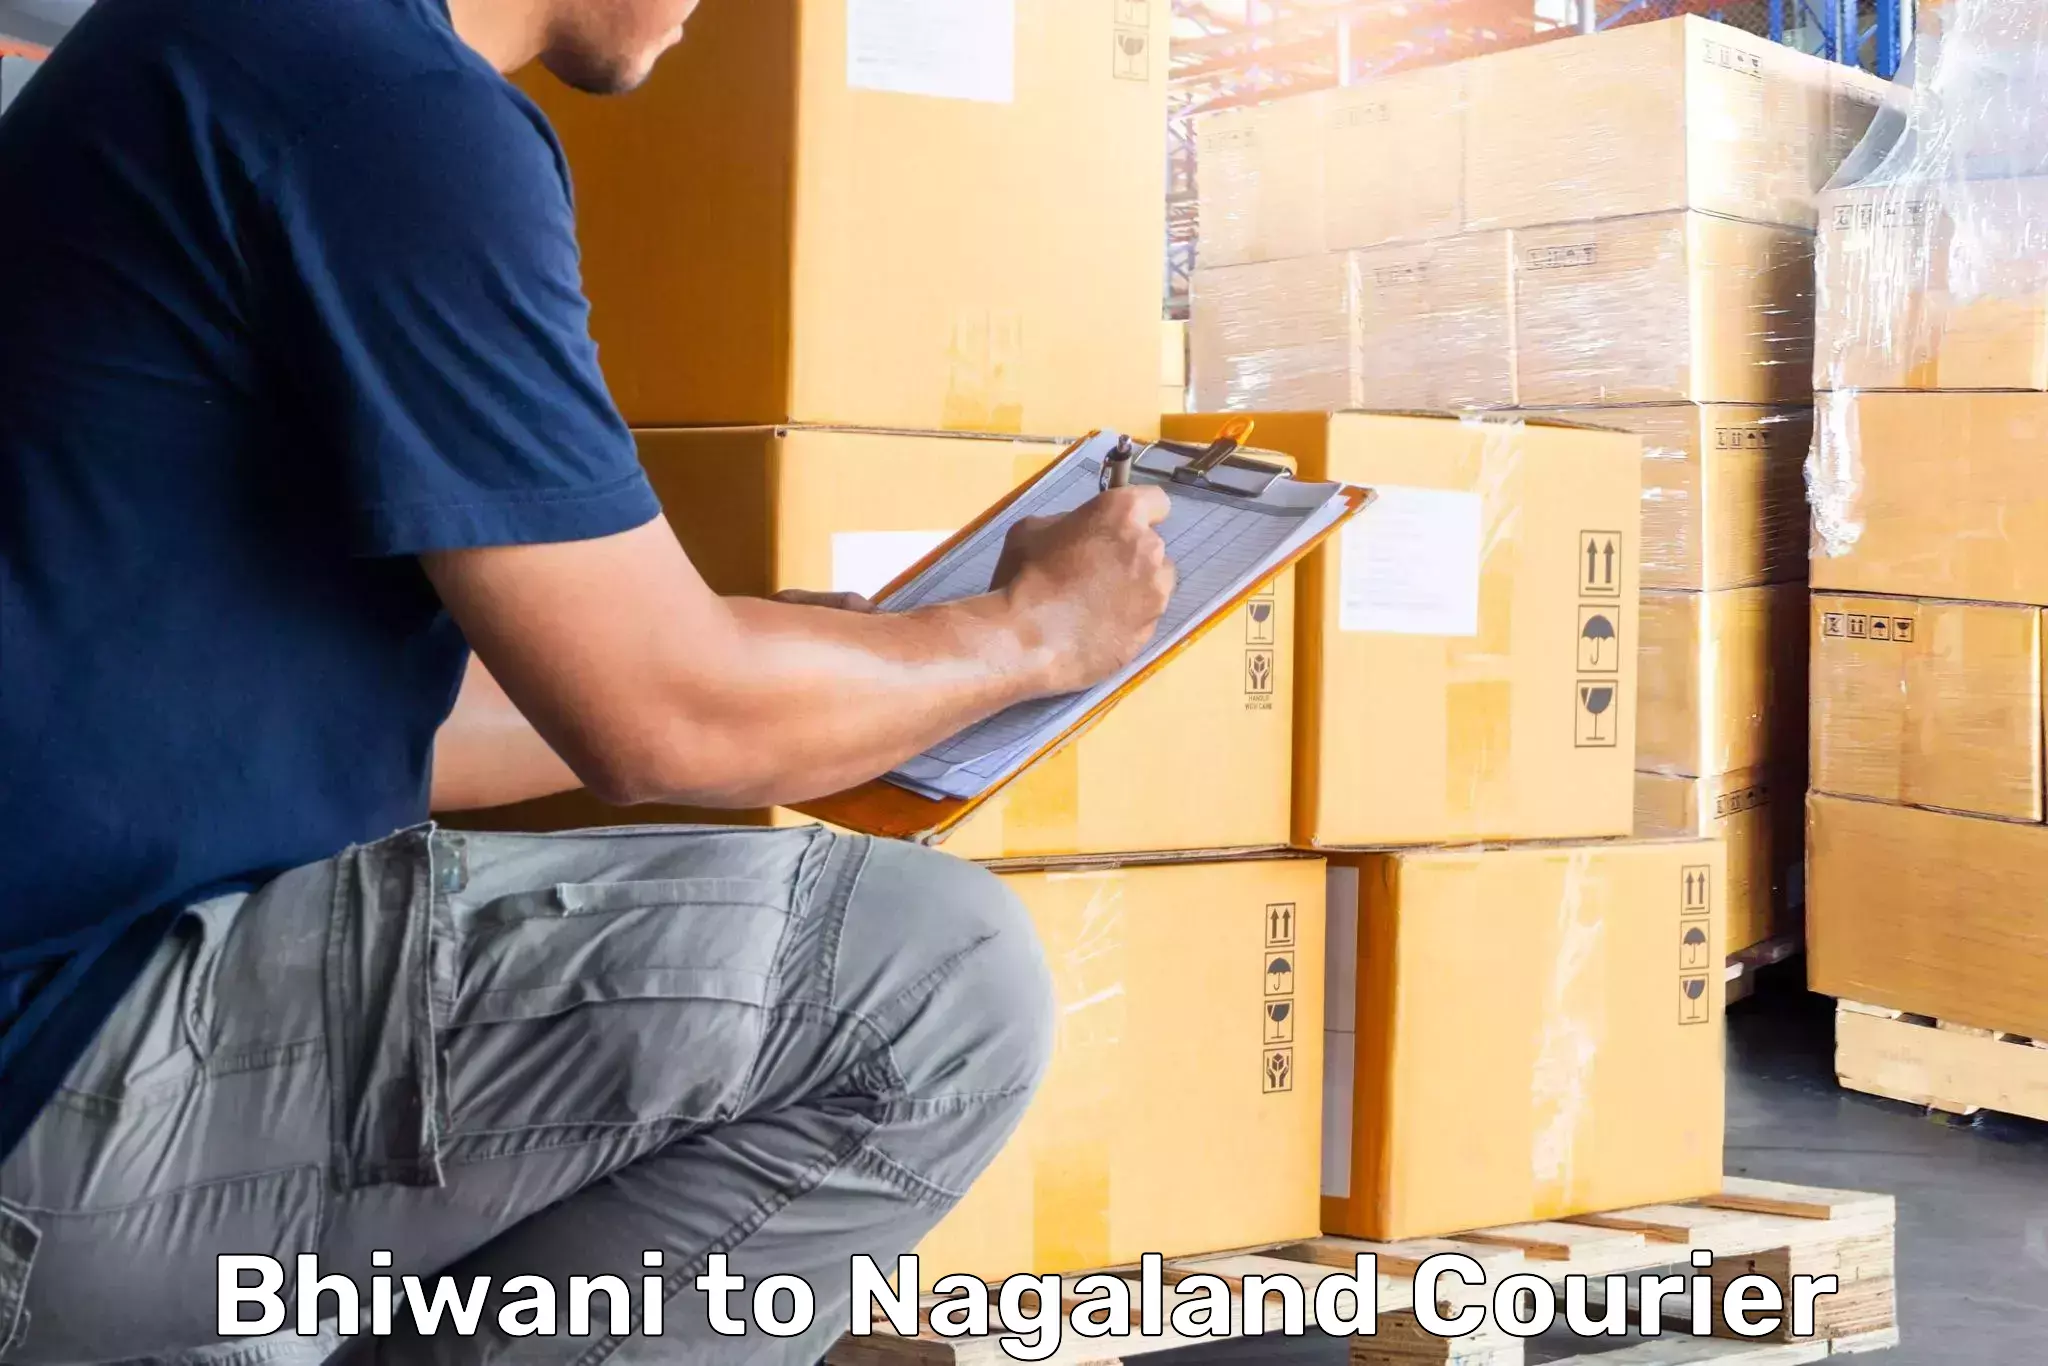 Luggage shipment processing Bhiwani to Nagaland